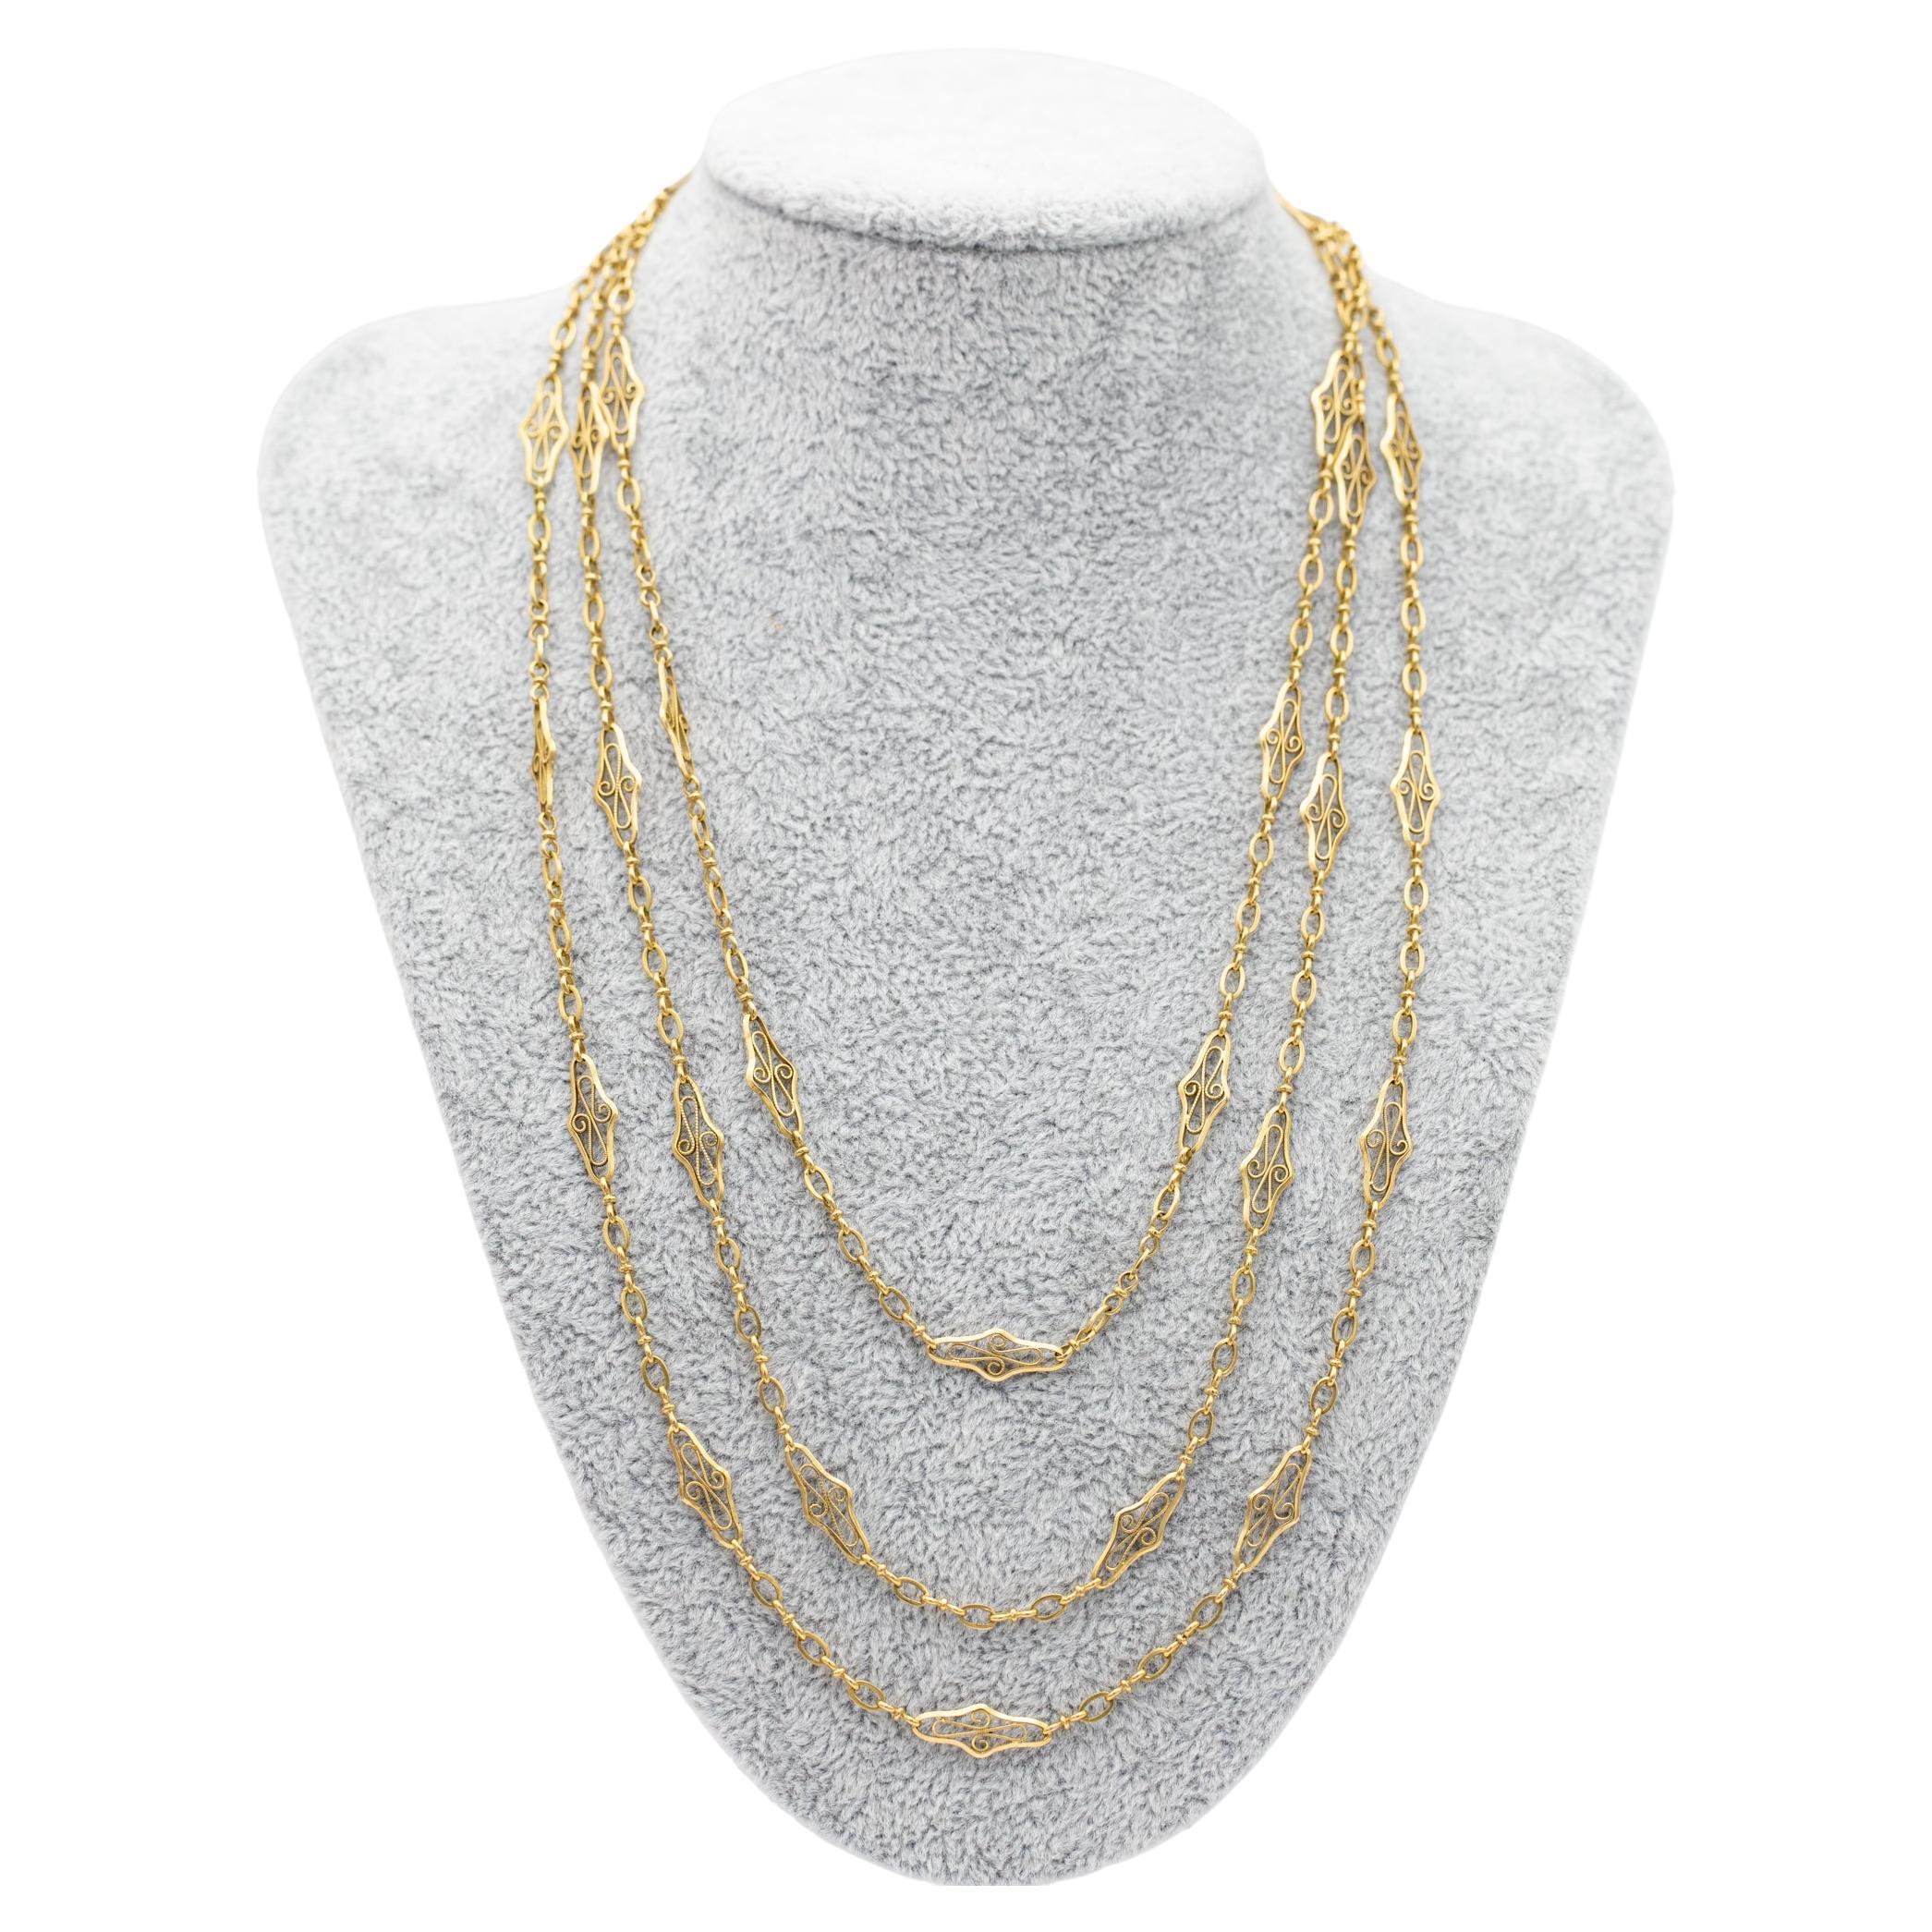 Zum Verkauf steht diese schöne 18 K Gelbgold sautoir Halskette, die als Einzel-, Doppel-oder Dreifach-Ständer getragen werden kann. Diese elegante Halskette besteht aus abwechselnd schlichten und ausgefallenen Gliedern mit schönen filigranen